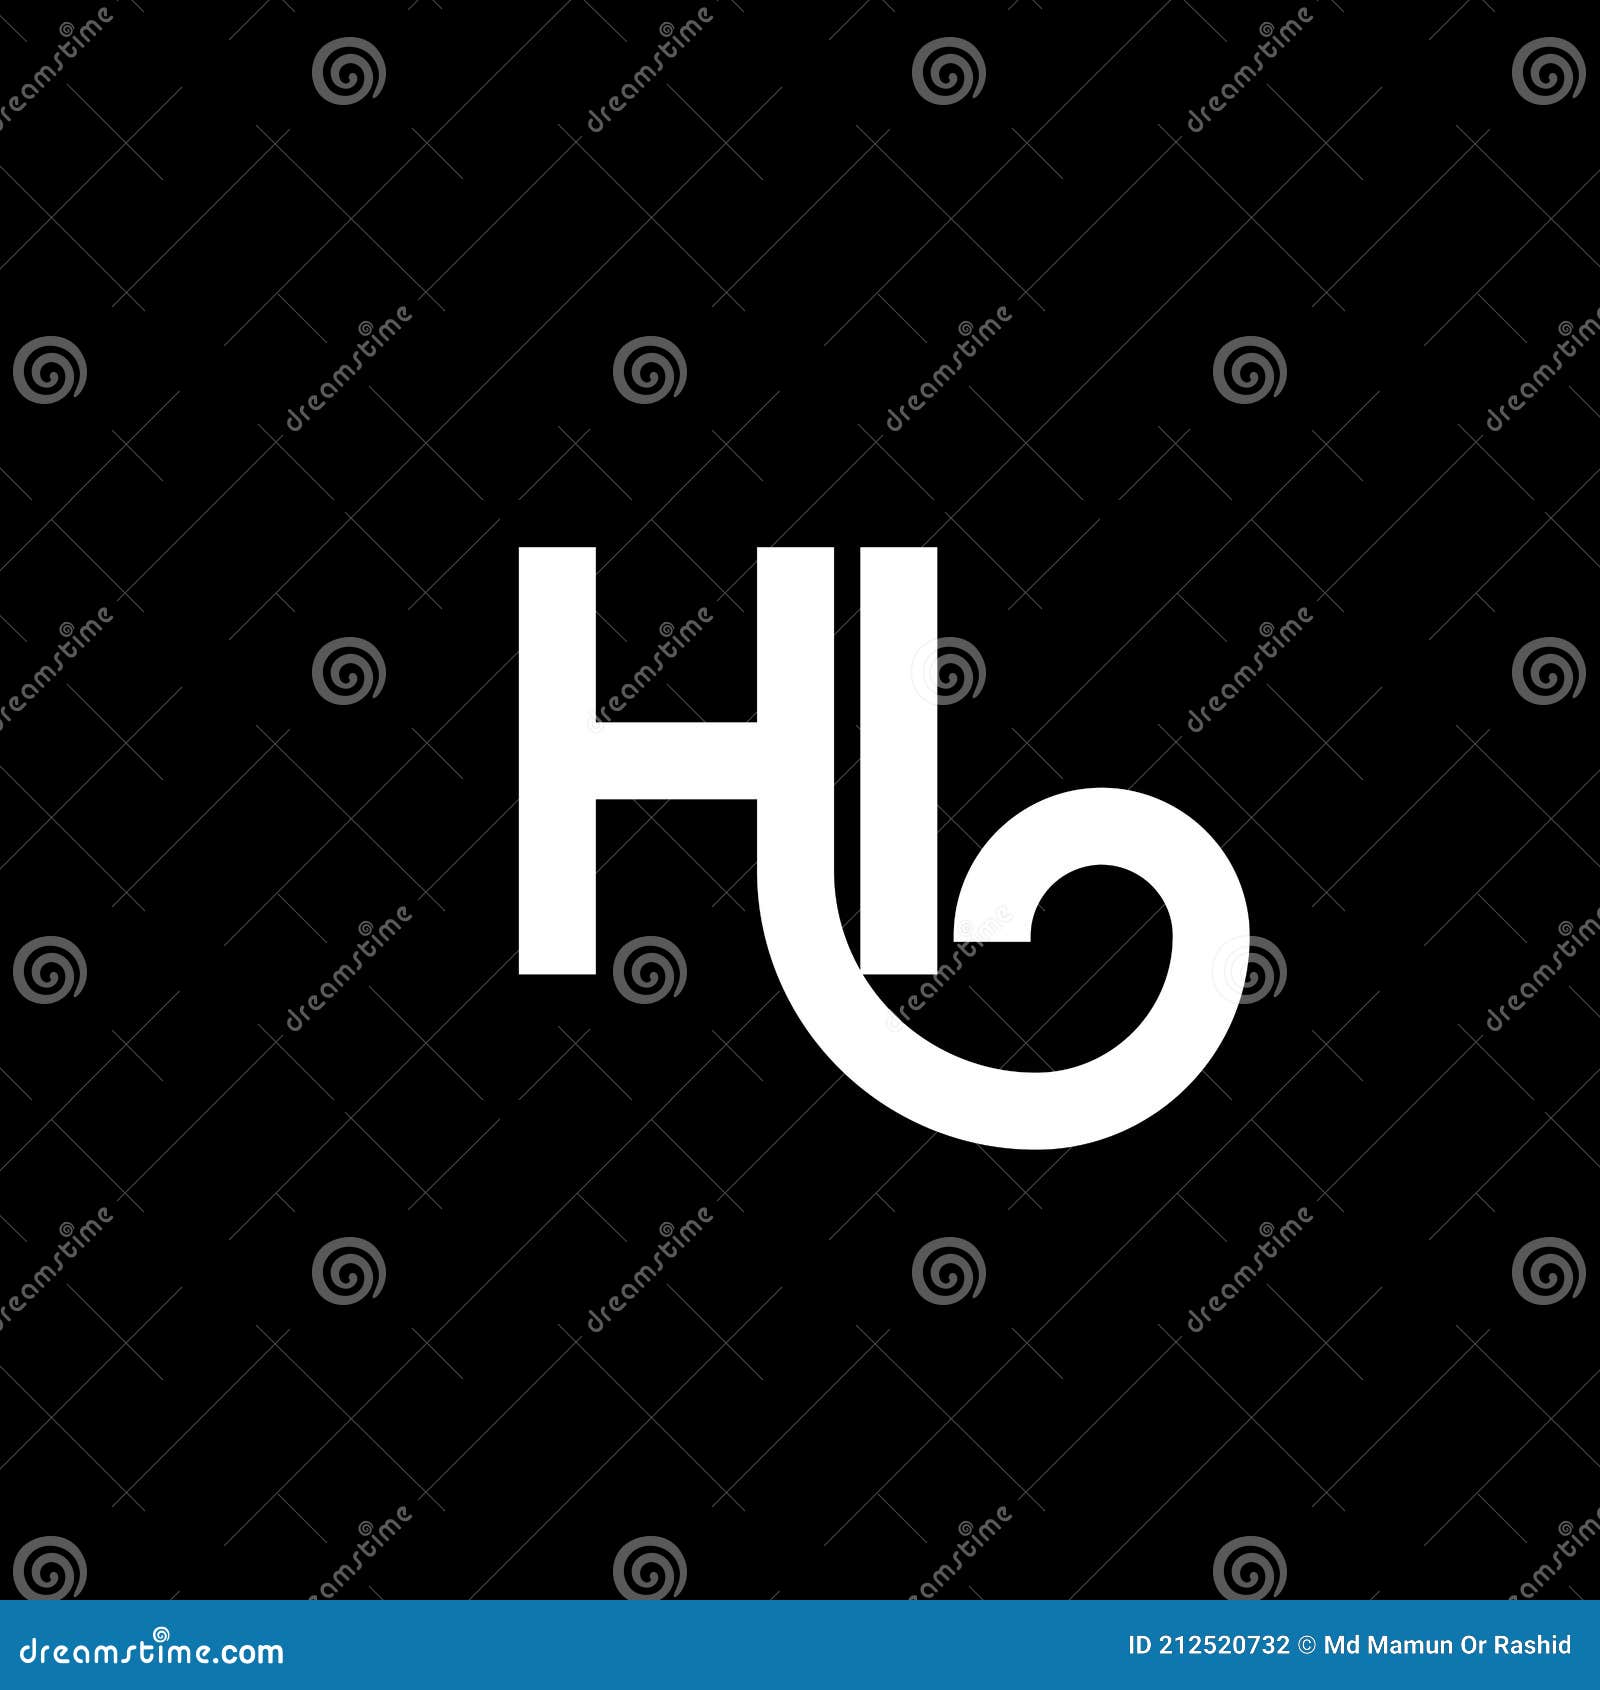 HI Letter Logo Design on Black Background. HI Creative Initials Letter ...